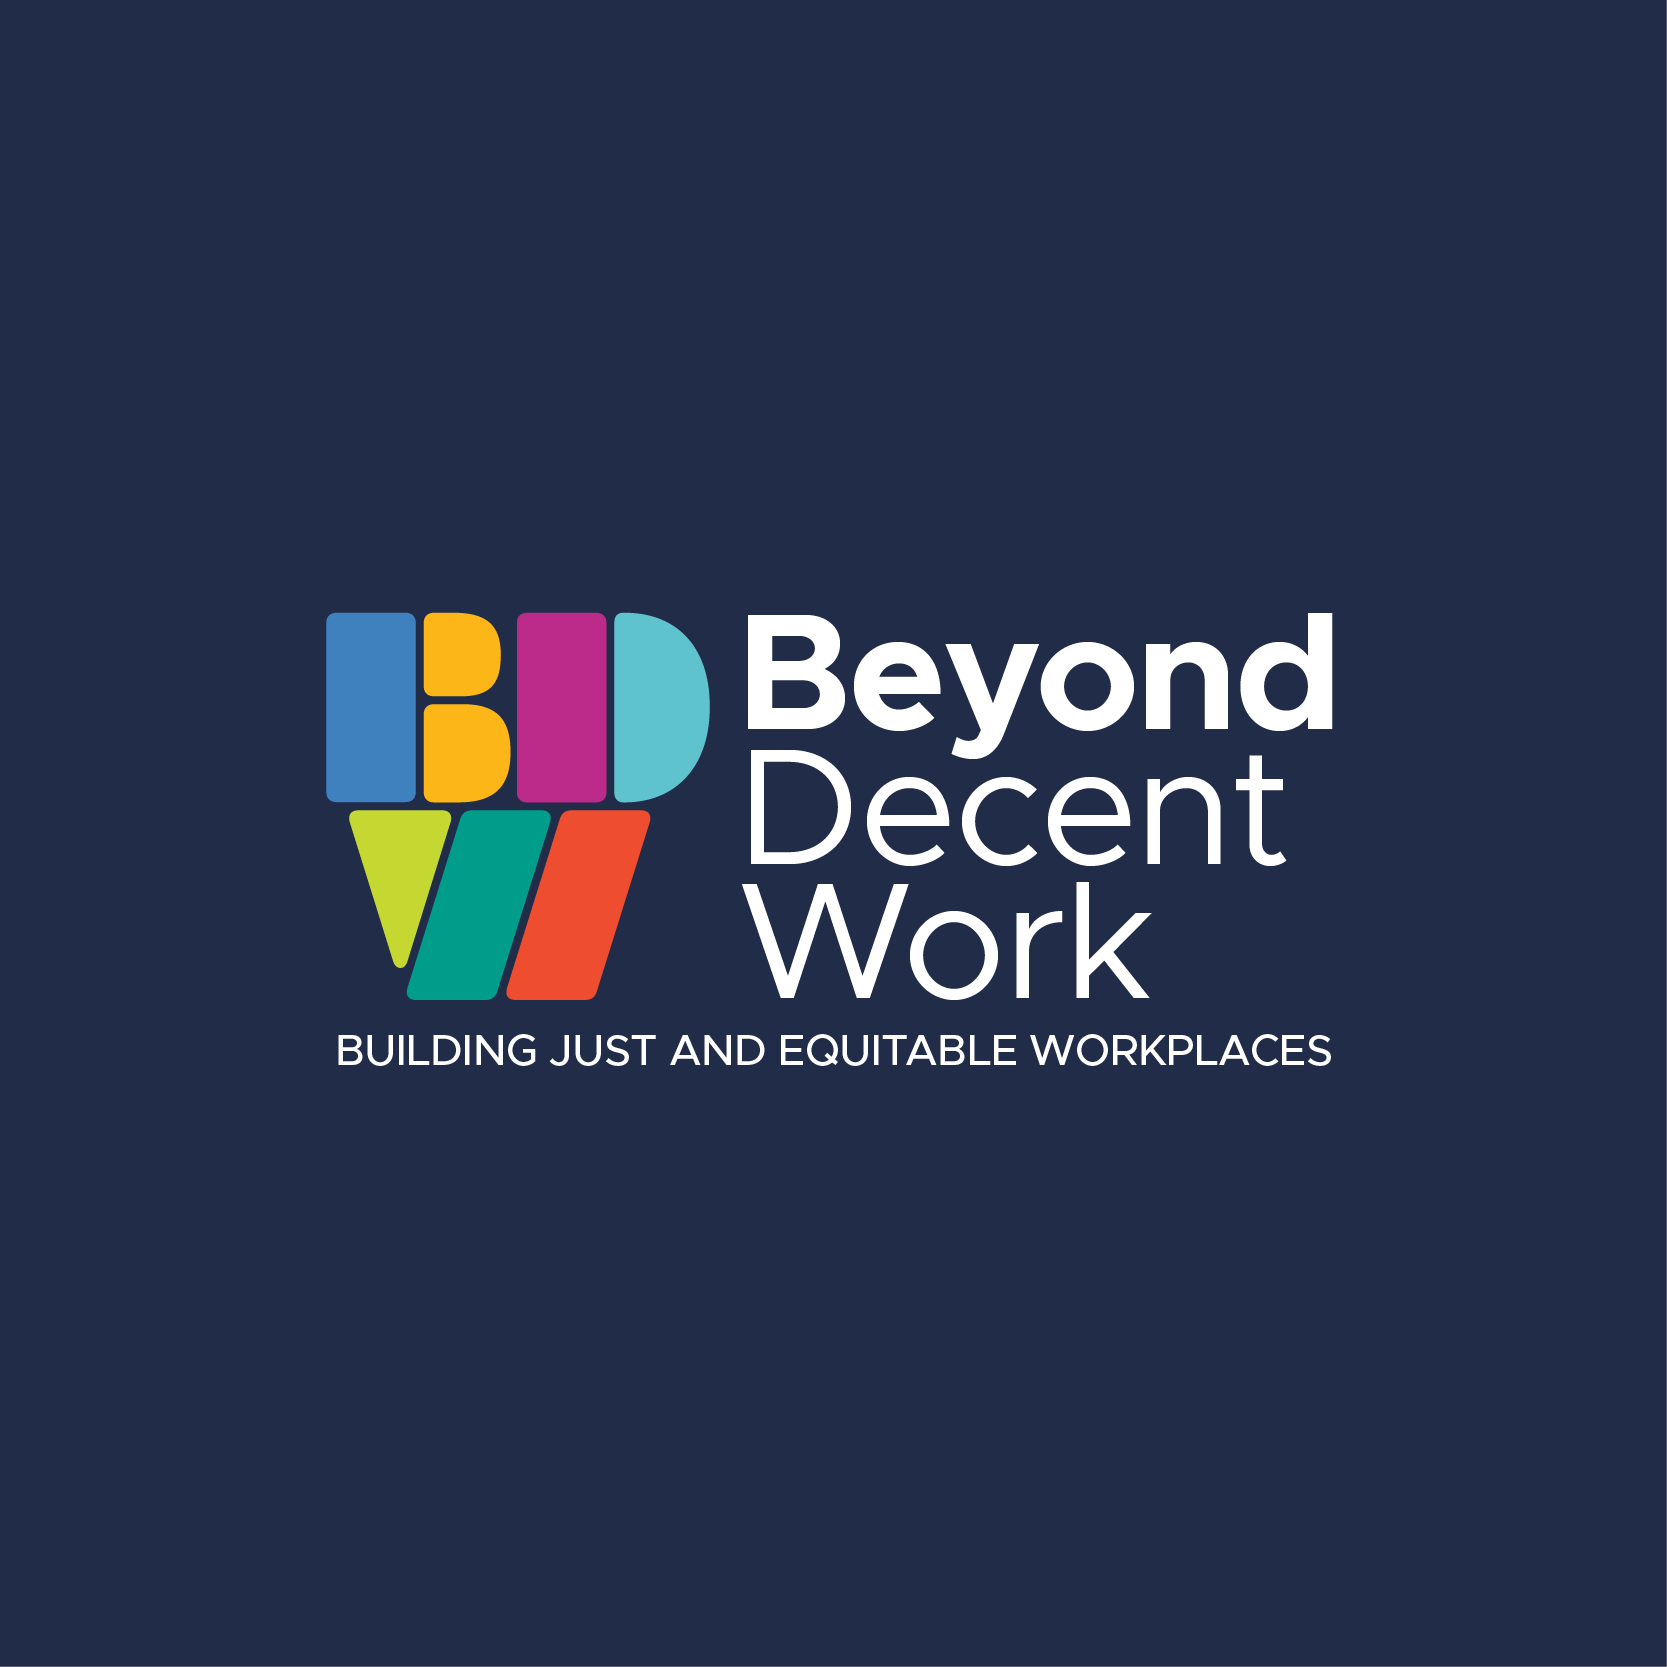 Beyond Decent Work